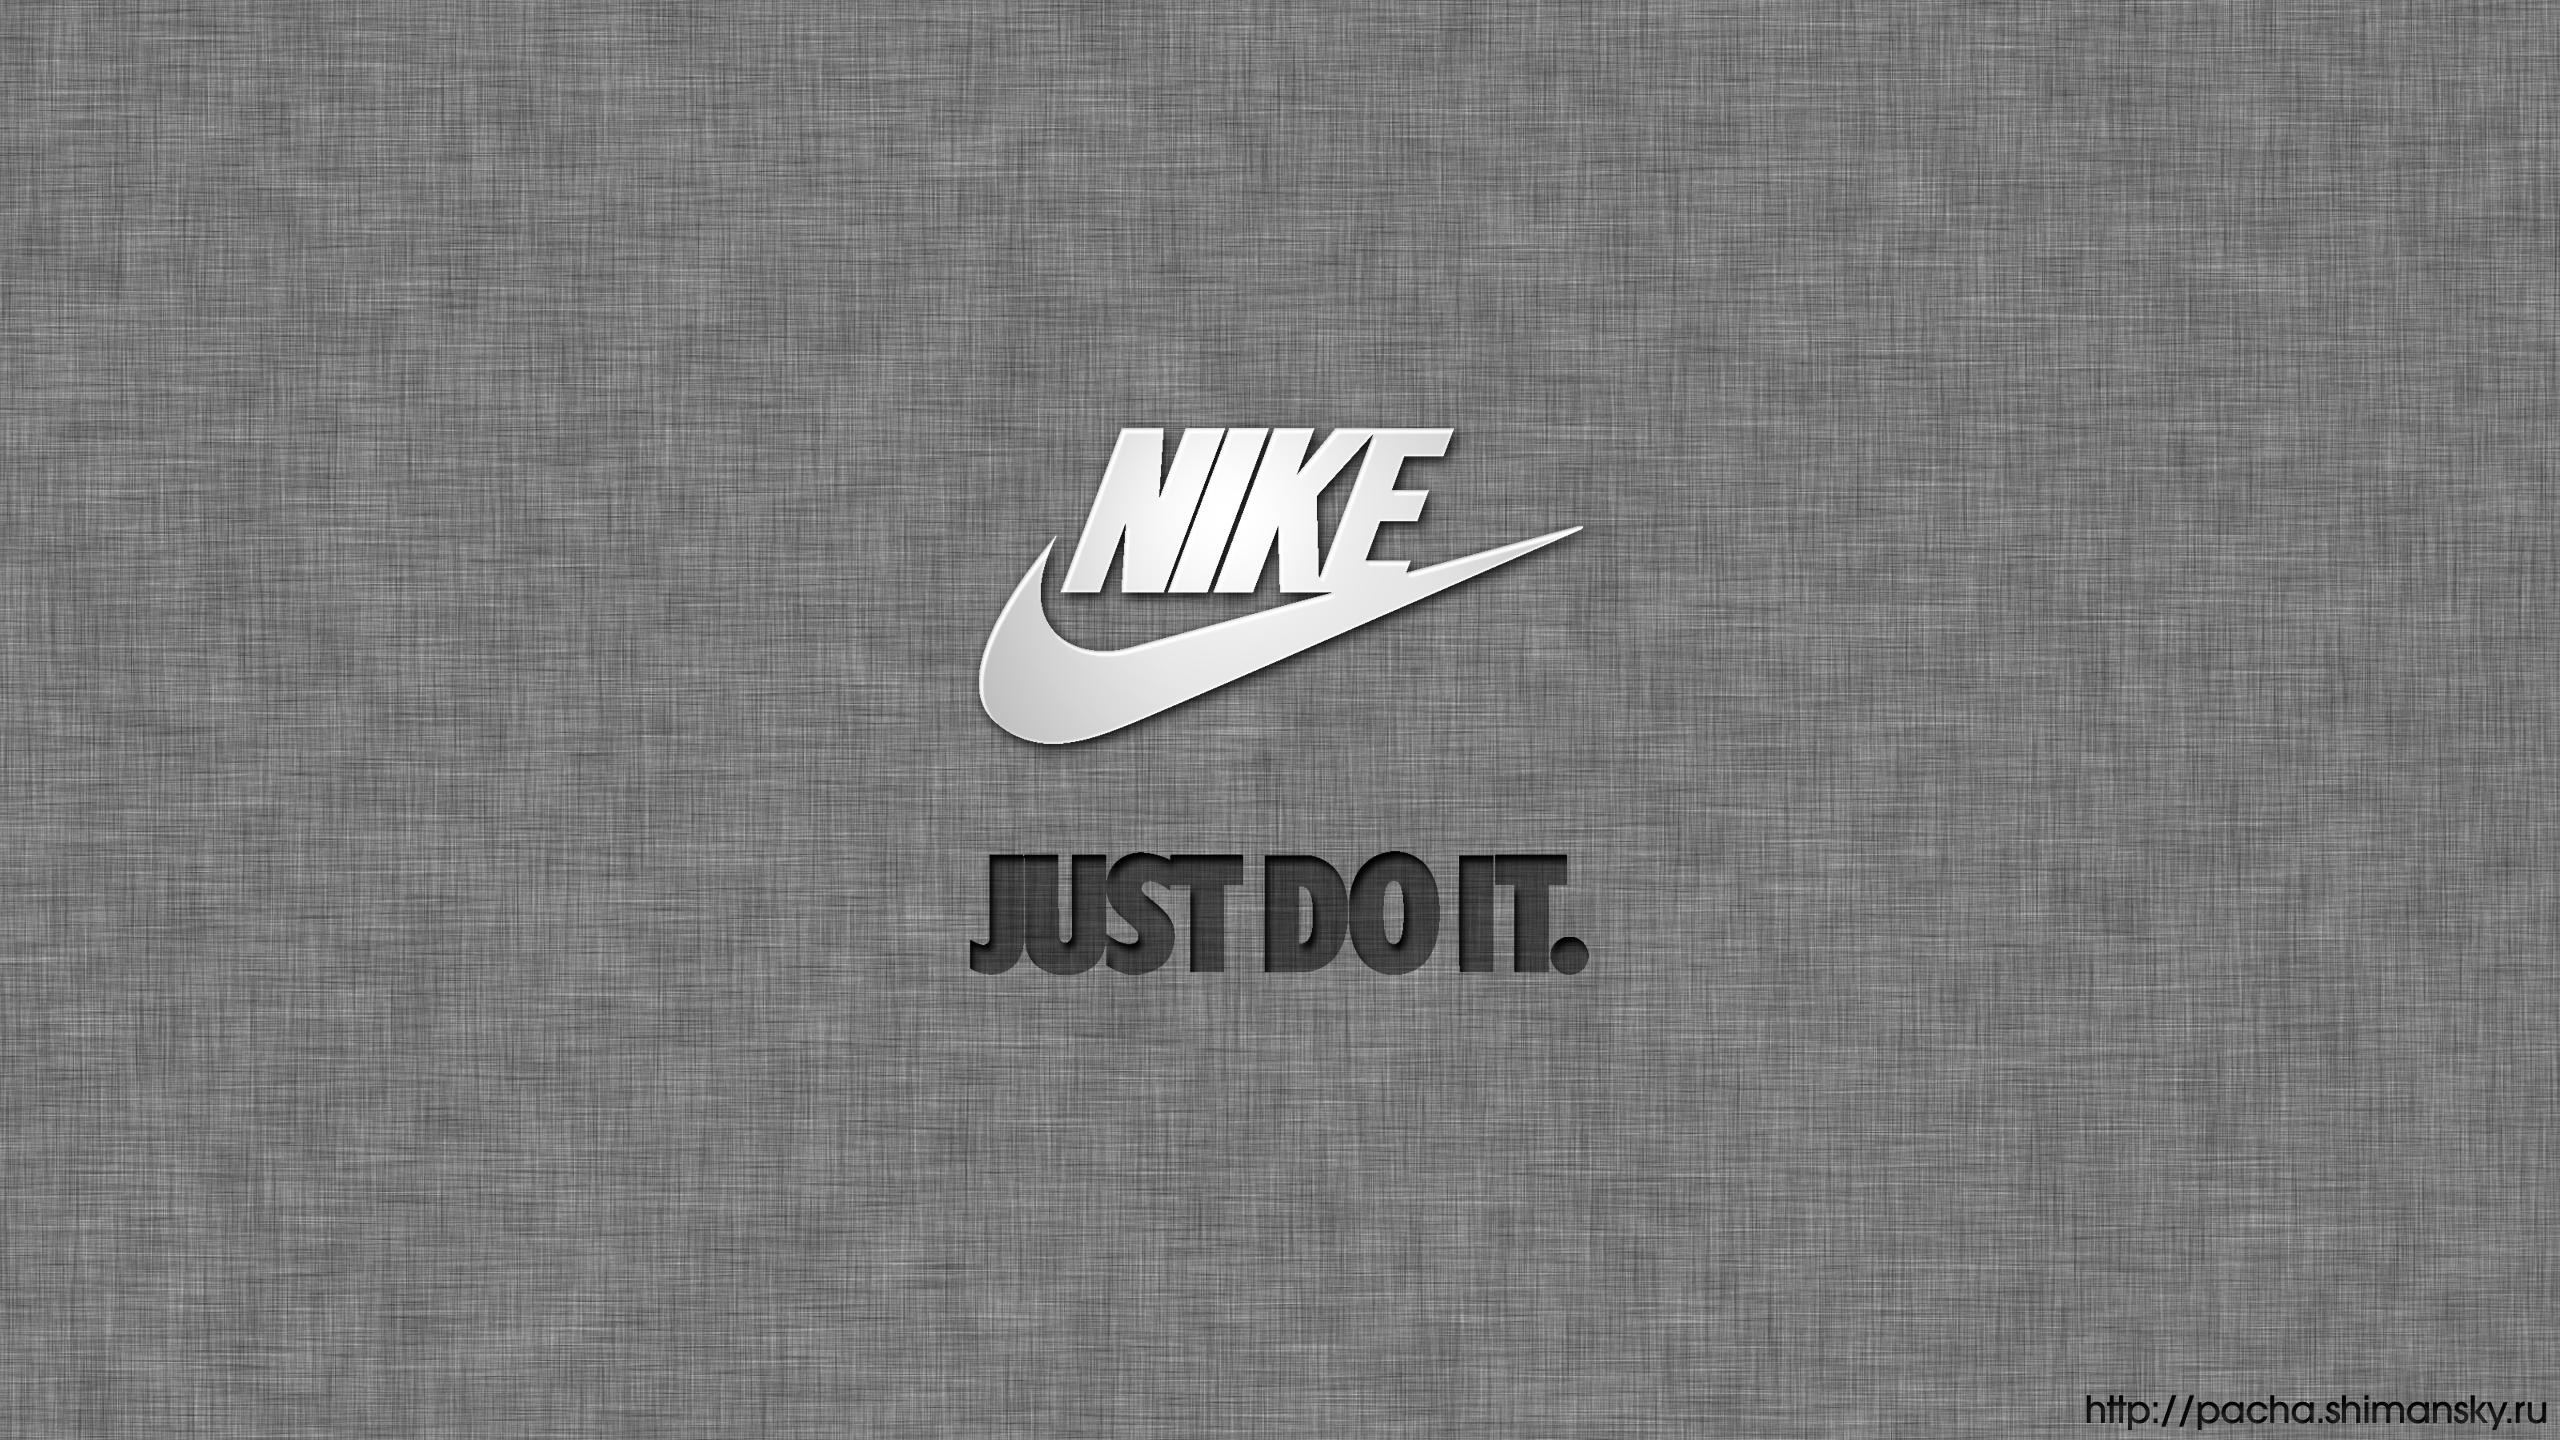 Nike Logo Wallpapers Hd Free Download Pixelstalk Net - blue background nike logo just do it hd wallpaper roblox